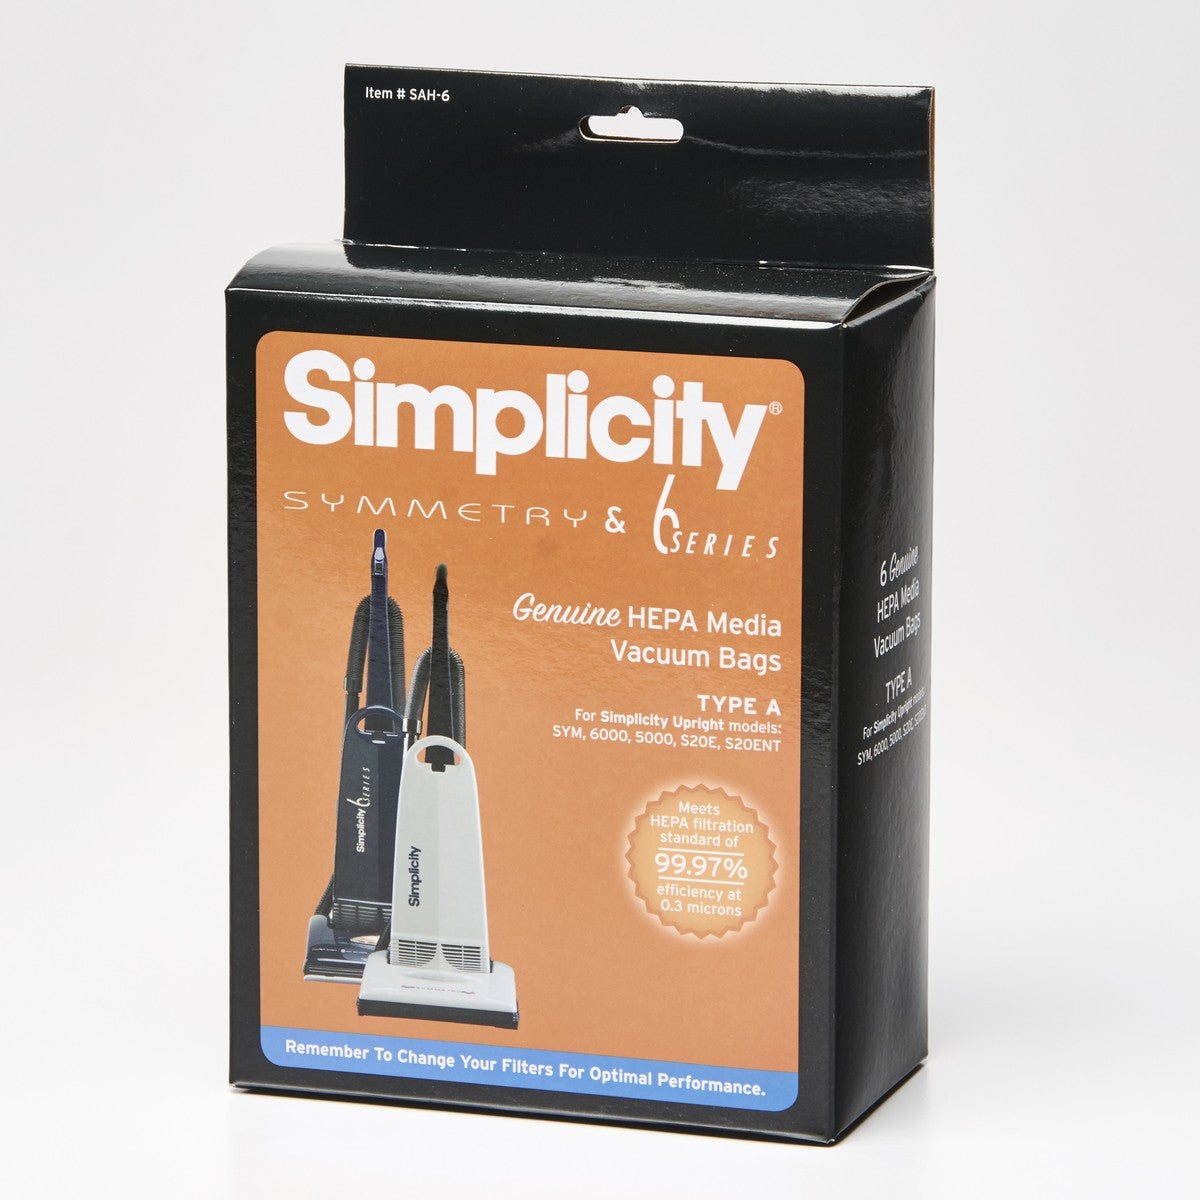 Simplicity HEPA media vacuum bag SAH-6 Type A.